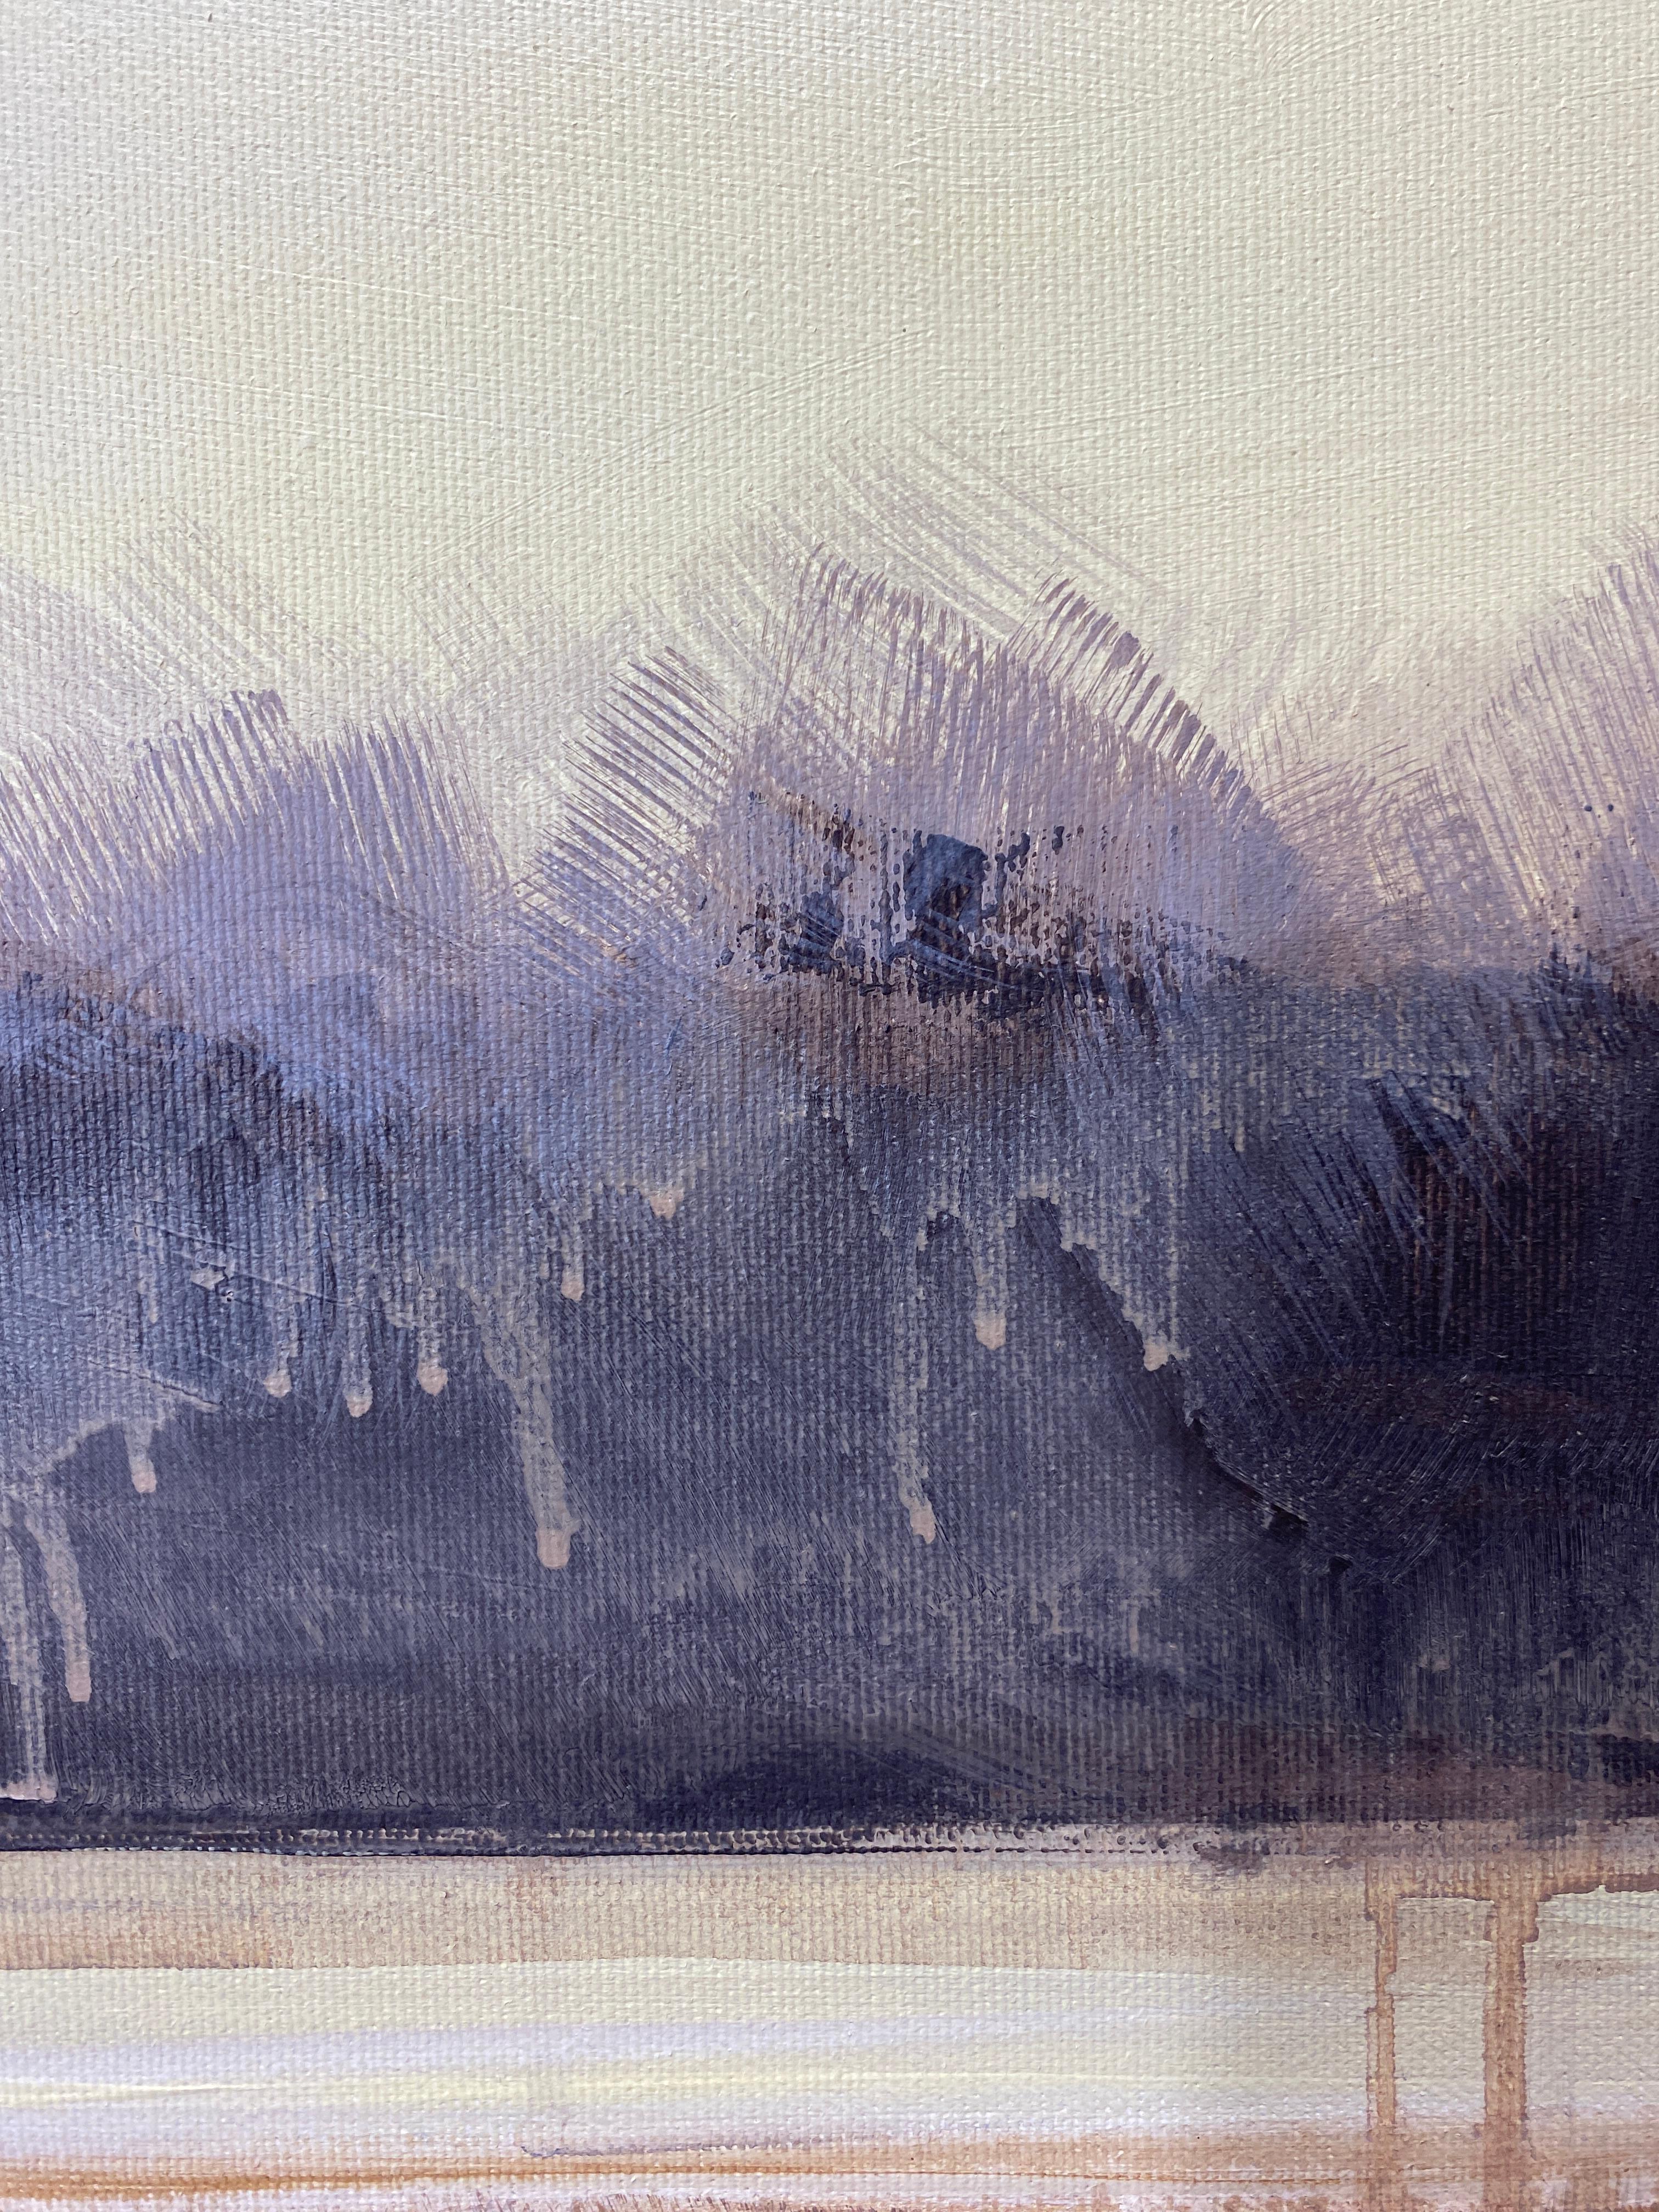 Nebel über Wasser – Painting von HELEN MOUNT